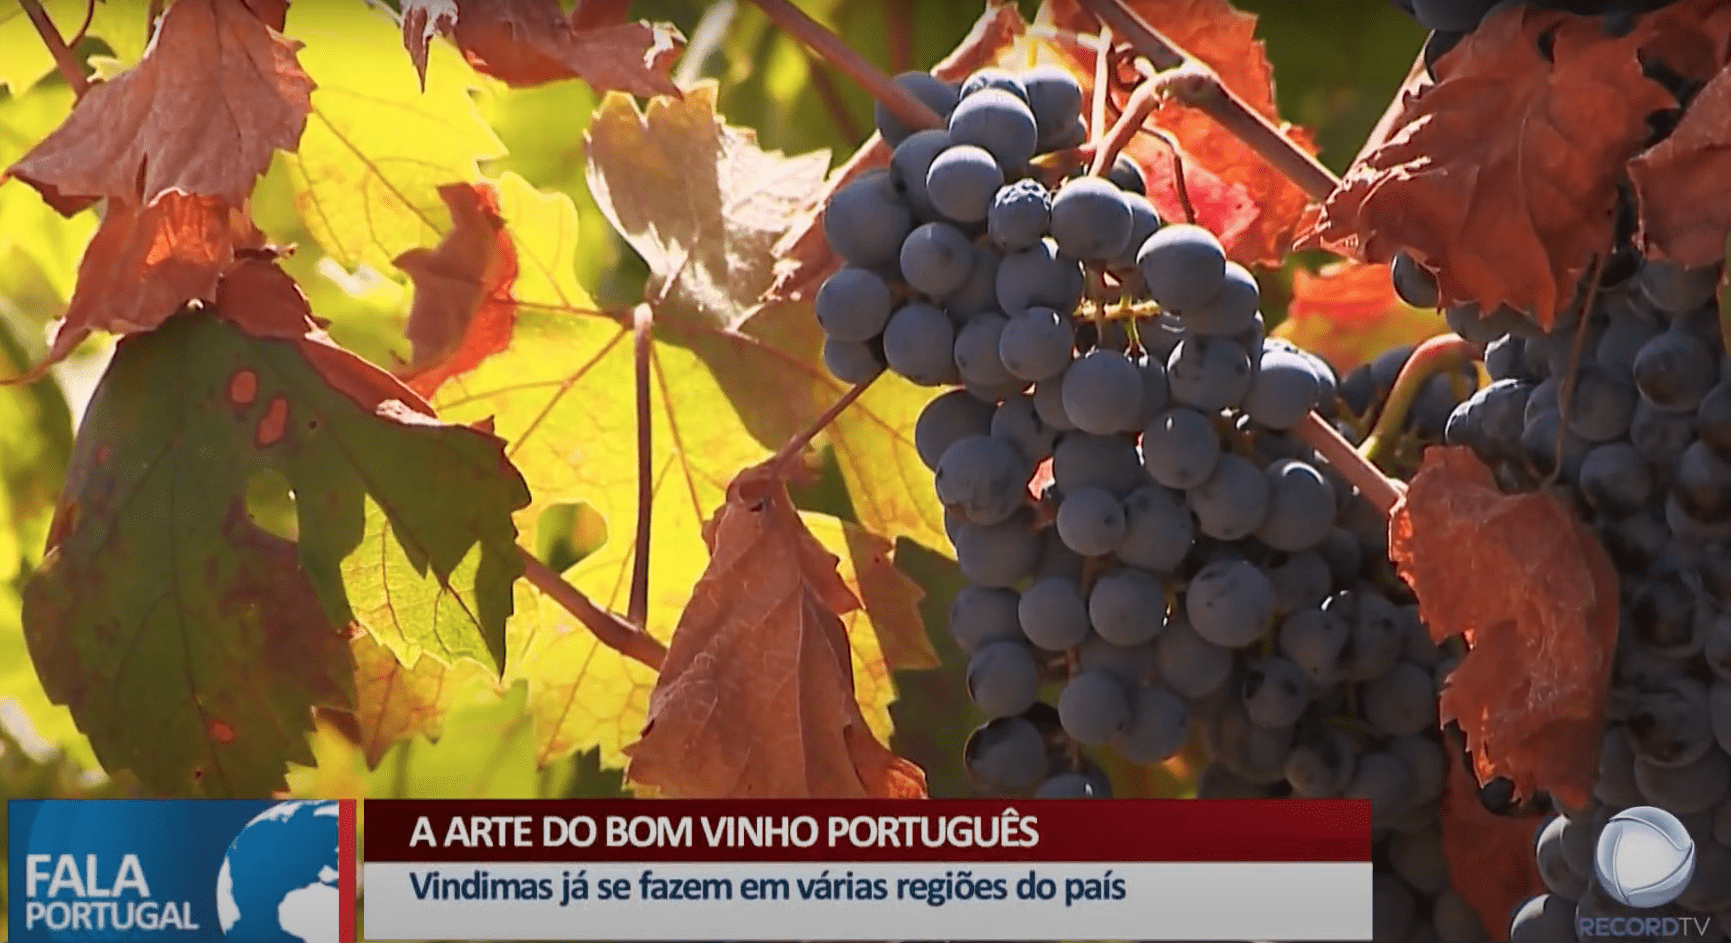 A arte do bom vinho português